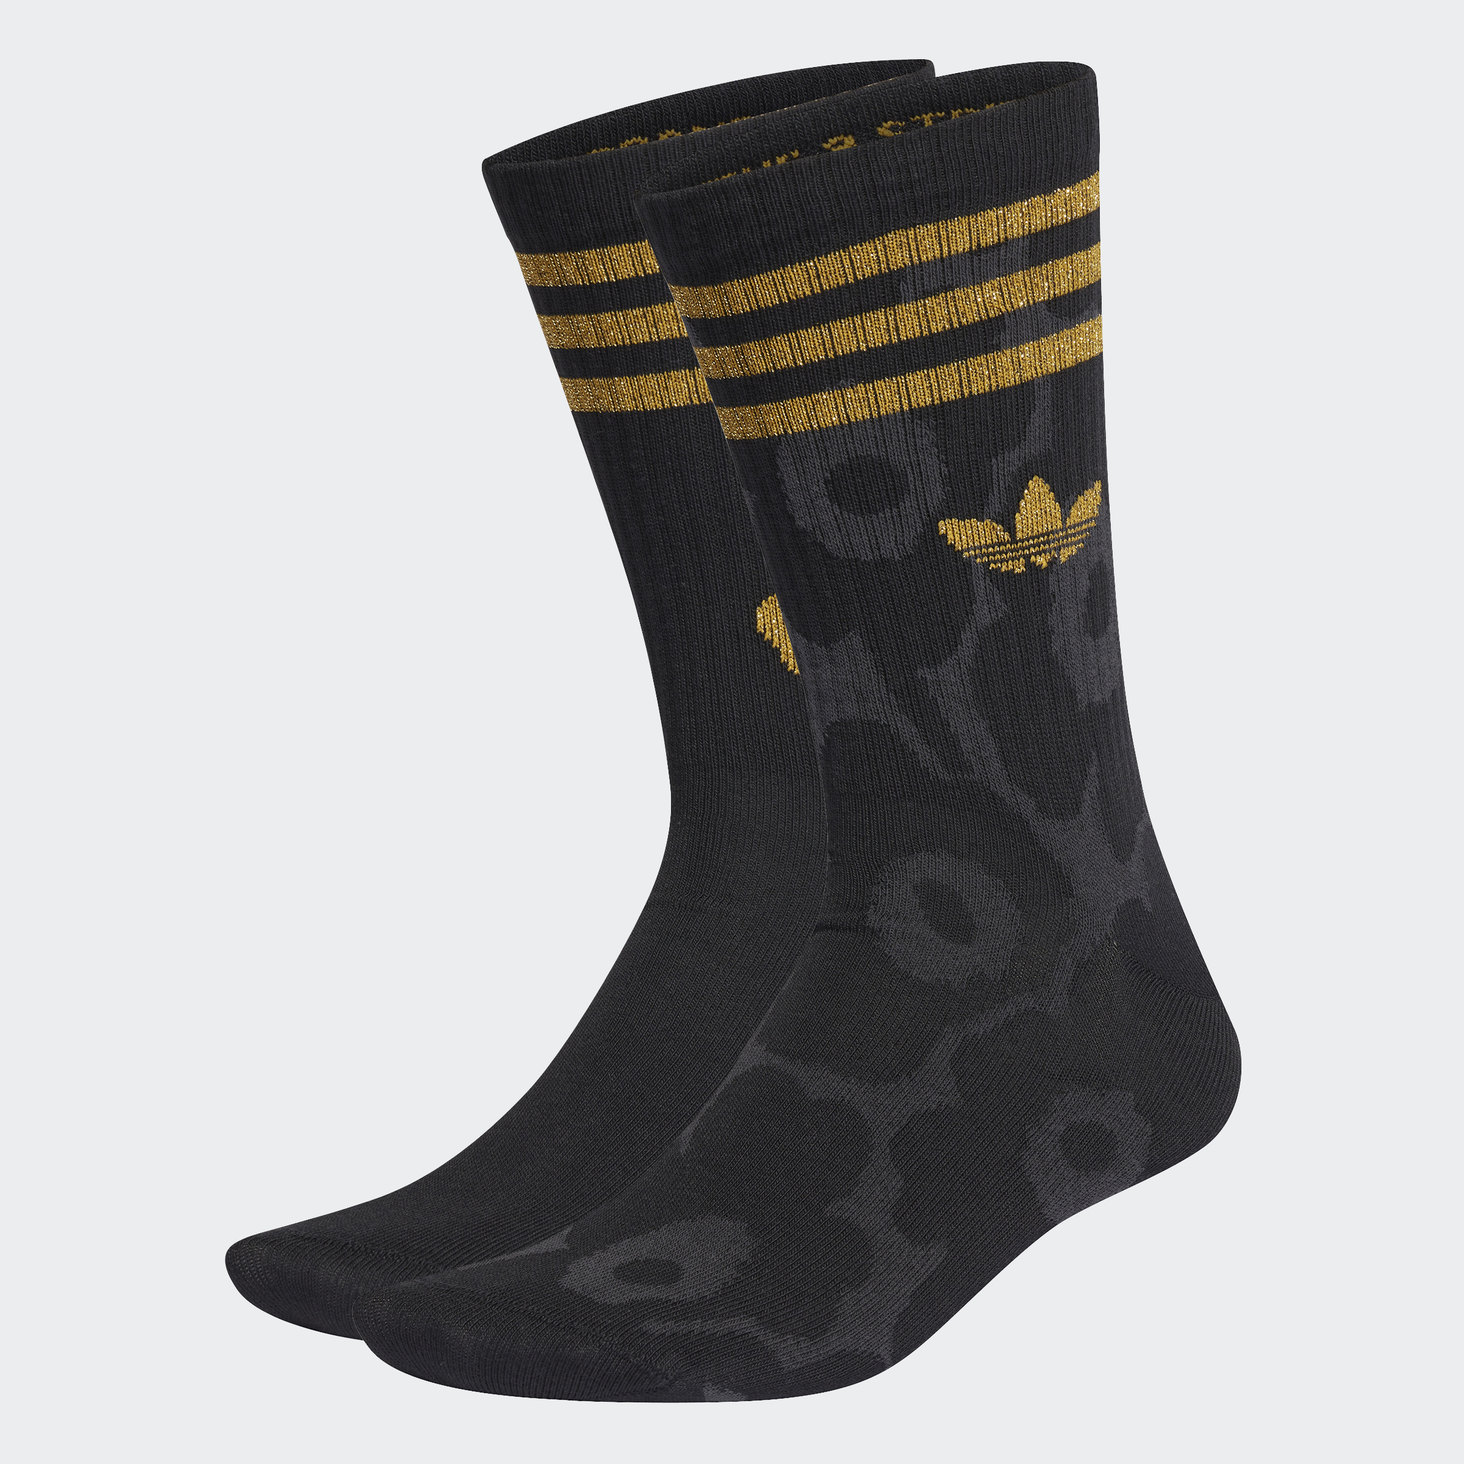 adidas Originals x Marimekko Crew Socks 2 Pairs